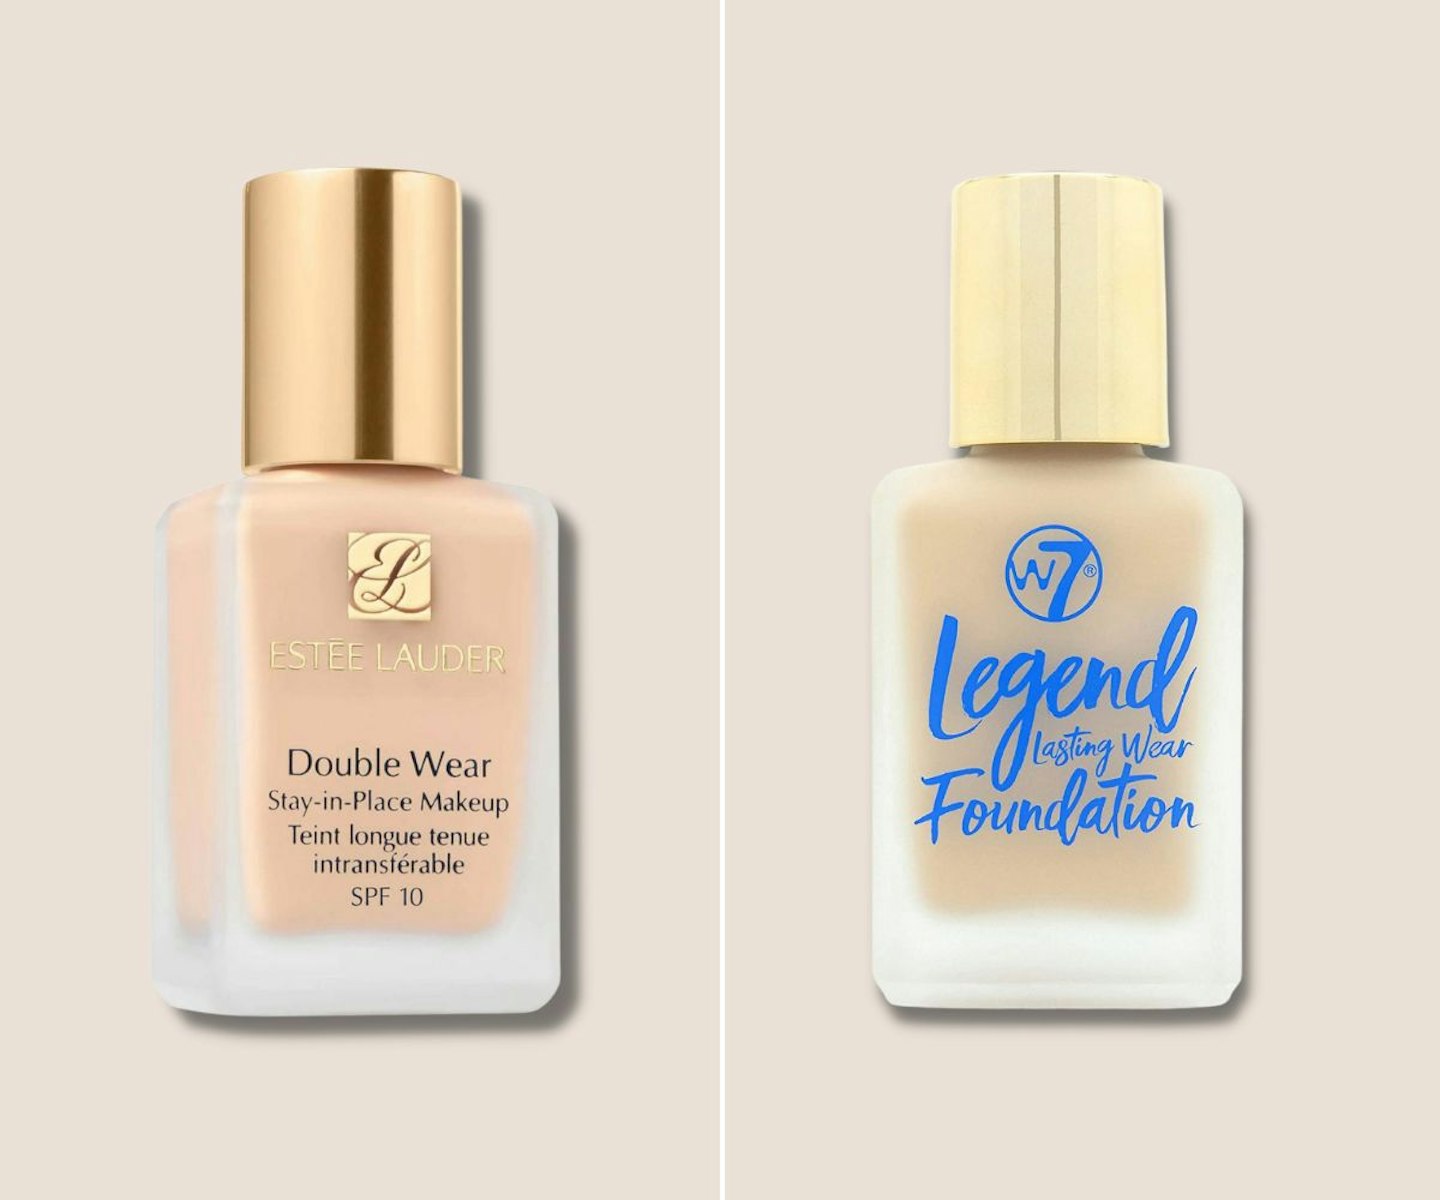 Estée Lauder Double Wear Foundation vs W7's Legend Foundation 